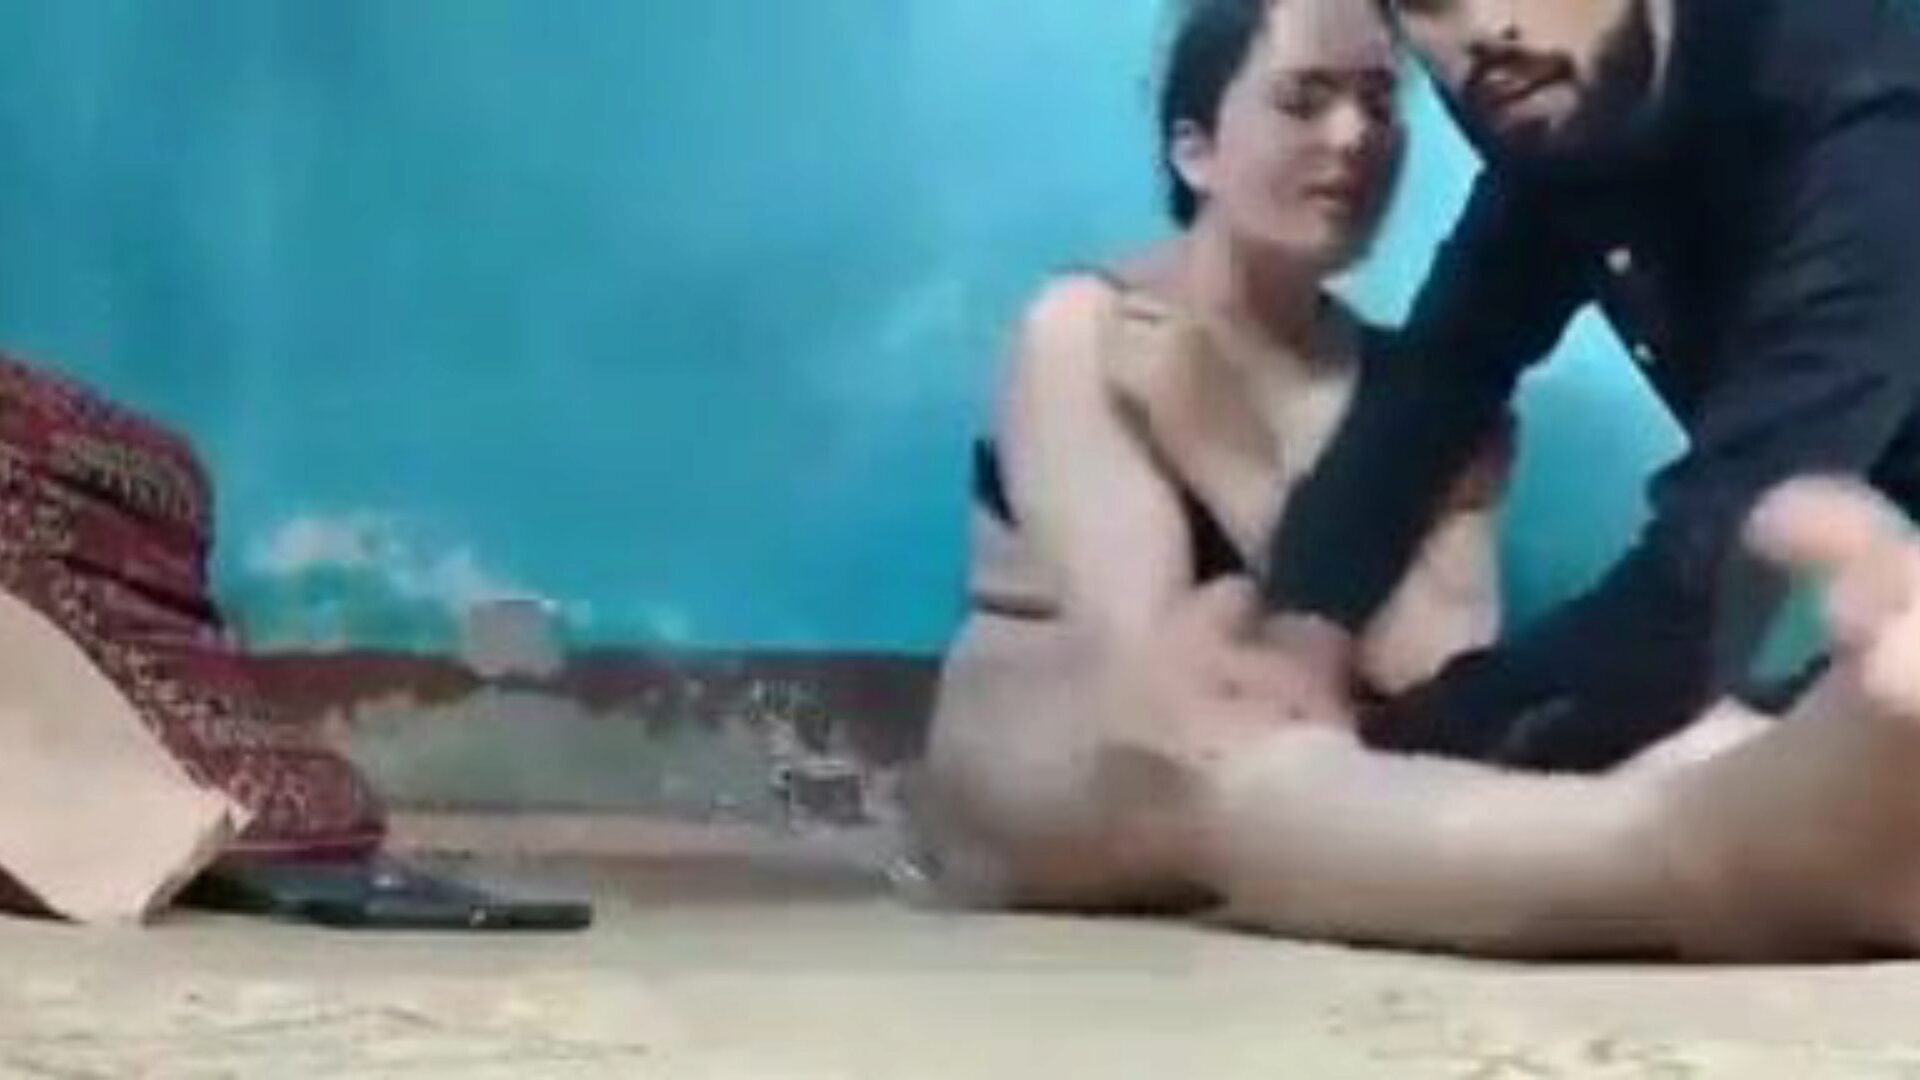 kashmiri sex video: indické porno video zdarma 69 - xhamster sledovat kashmiri sex video trubice bang-out video zdarma na xhamster, s nejsexi sbírkou indických xxx sex a příběh porno epizod scény